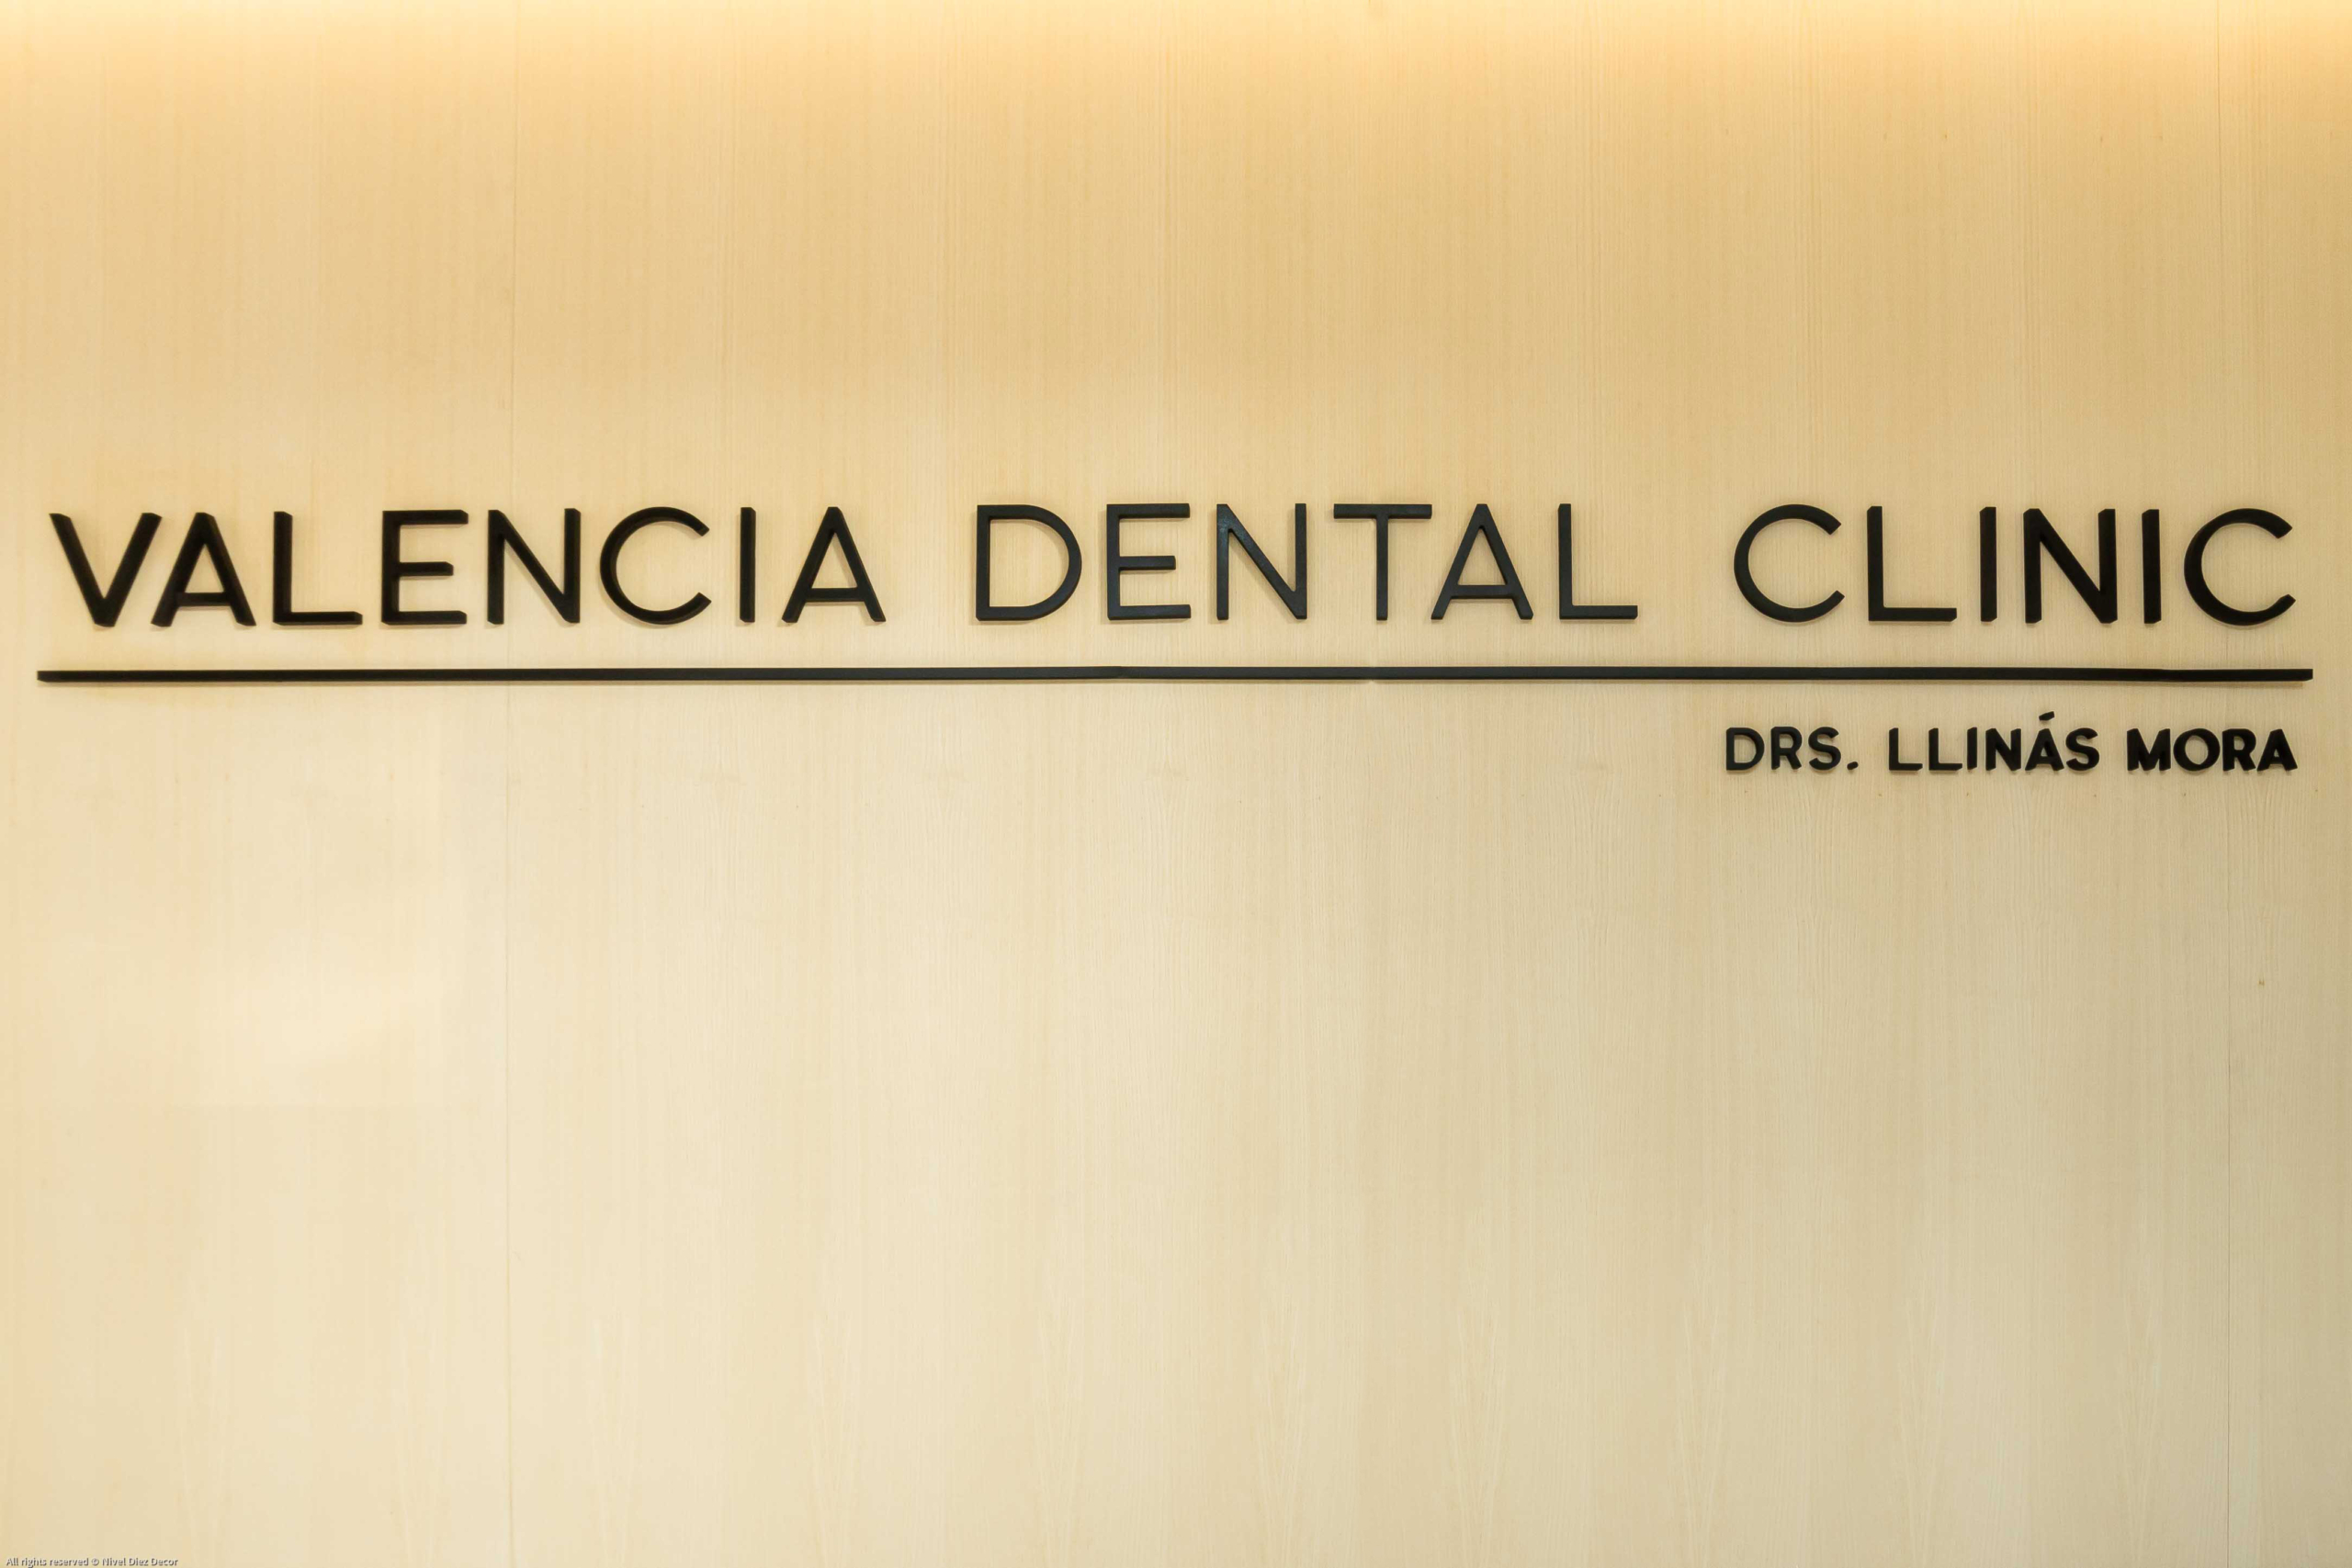 Logo de diseño moderno con nombre ¨Valencia dental clinic¨